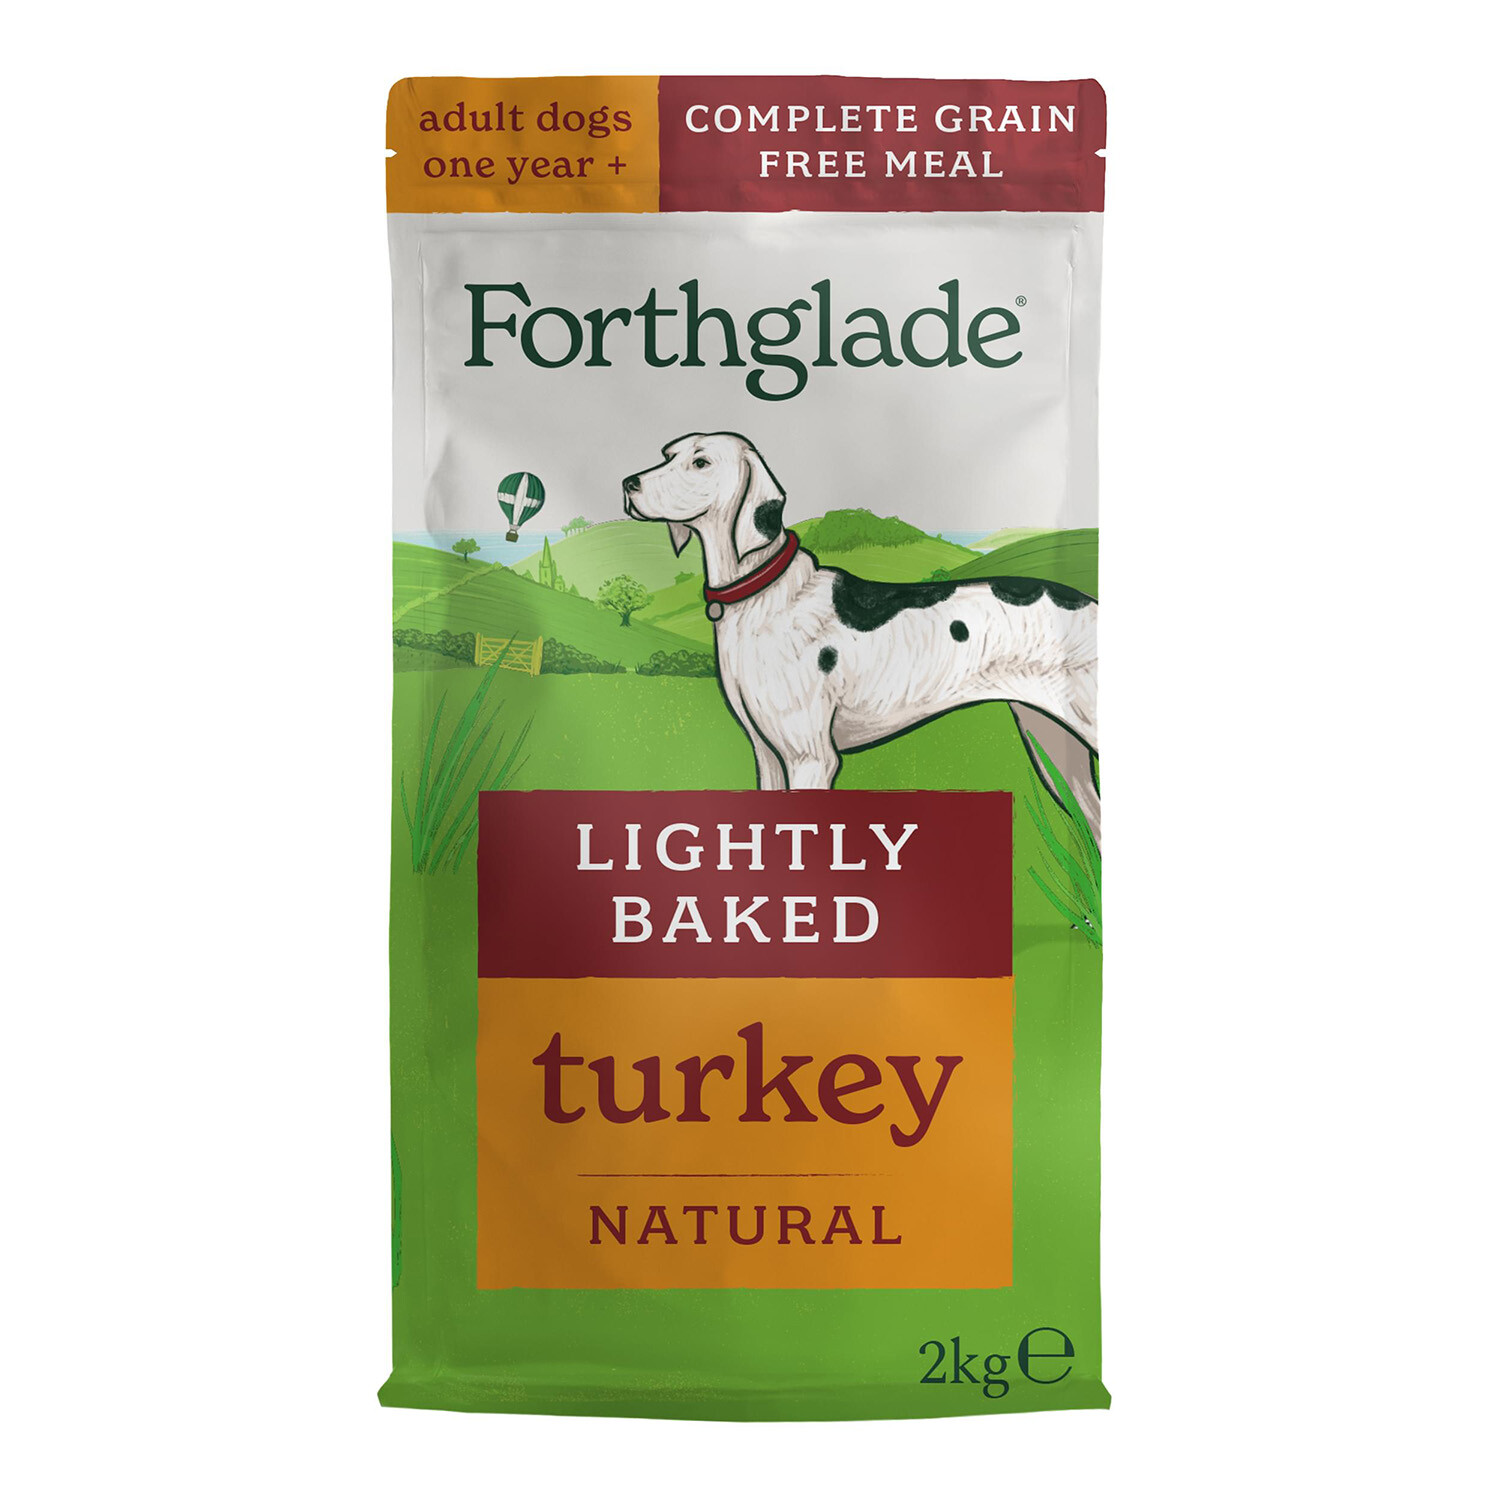 Forthglade Lightly Baked Natural Dry Dog Food - Turkey Image